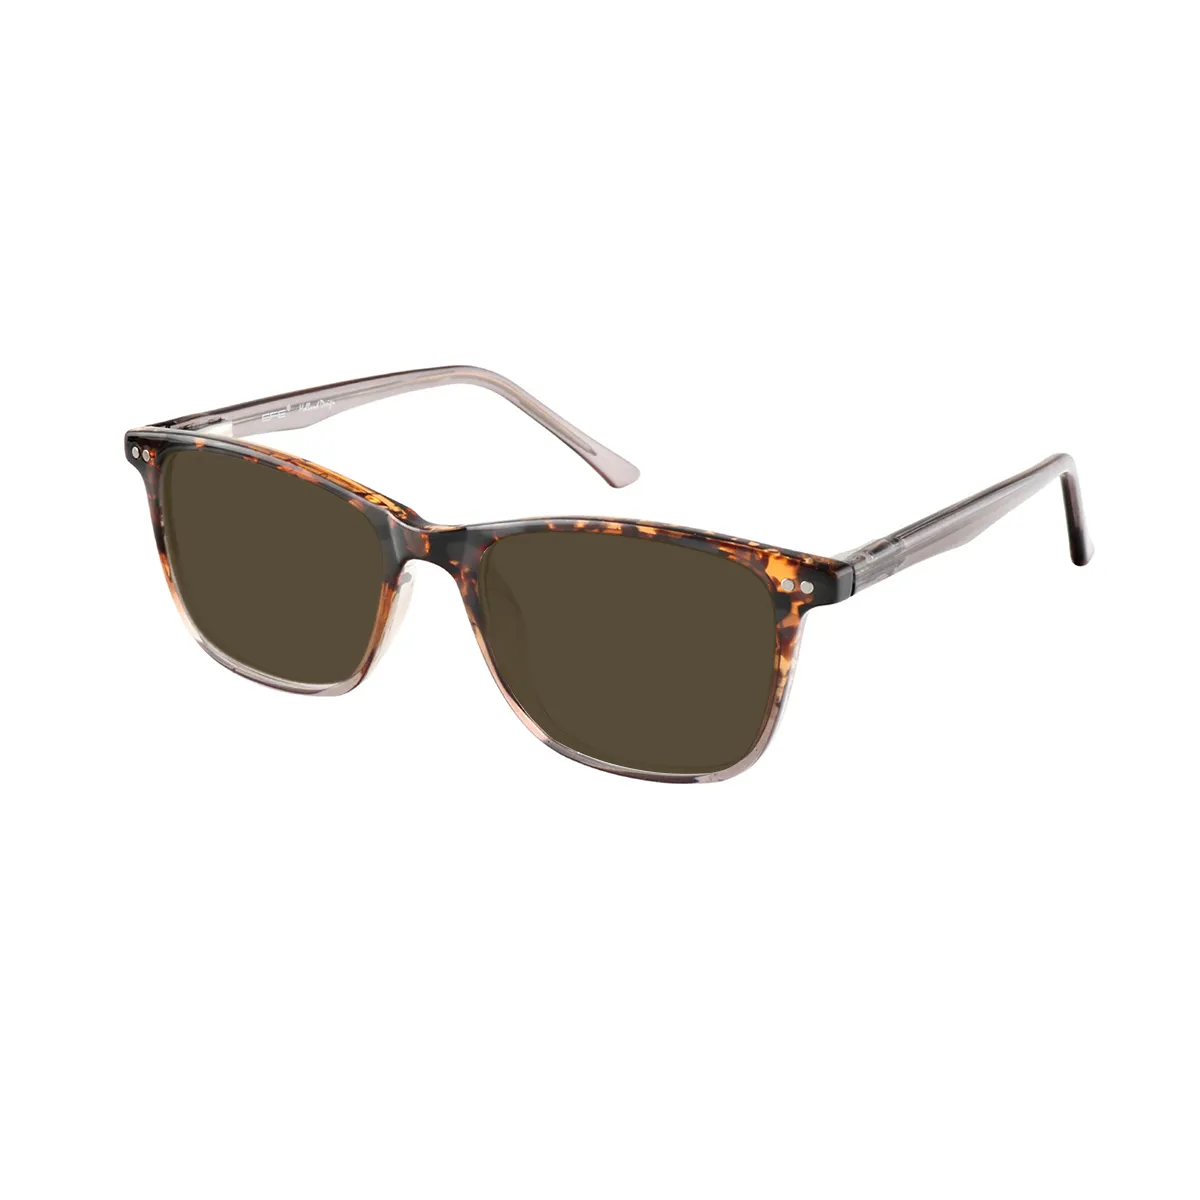 Zapata - Rectangle Demi-Brown Sunglasses for Men & Women